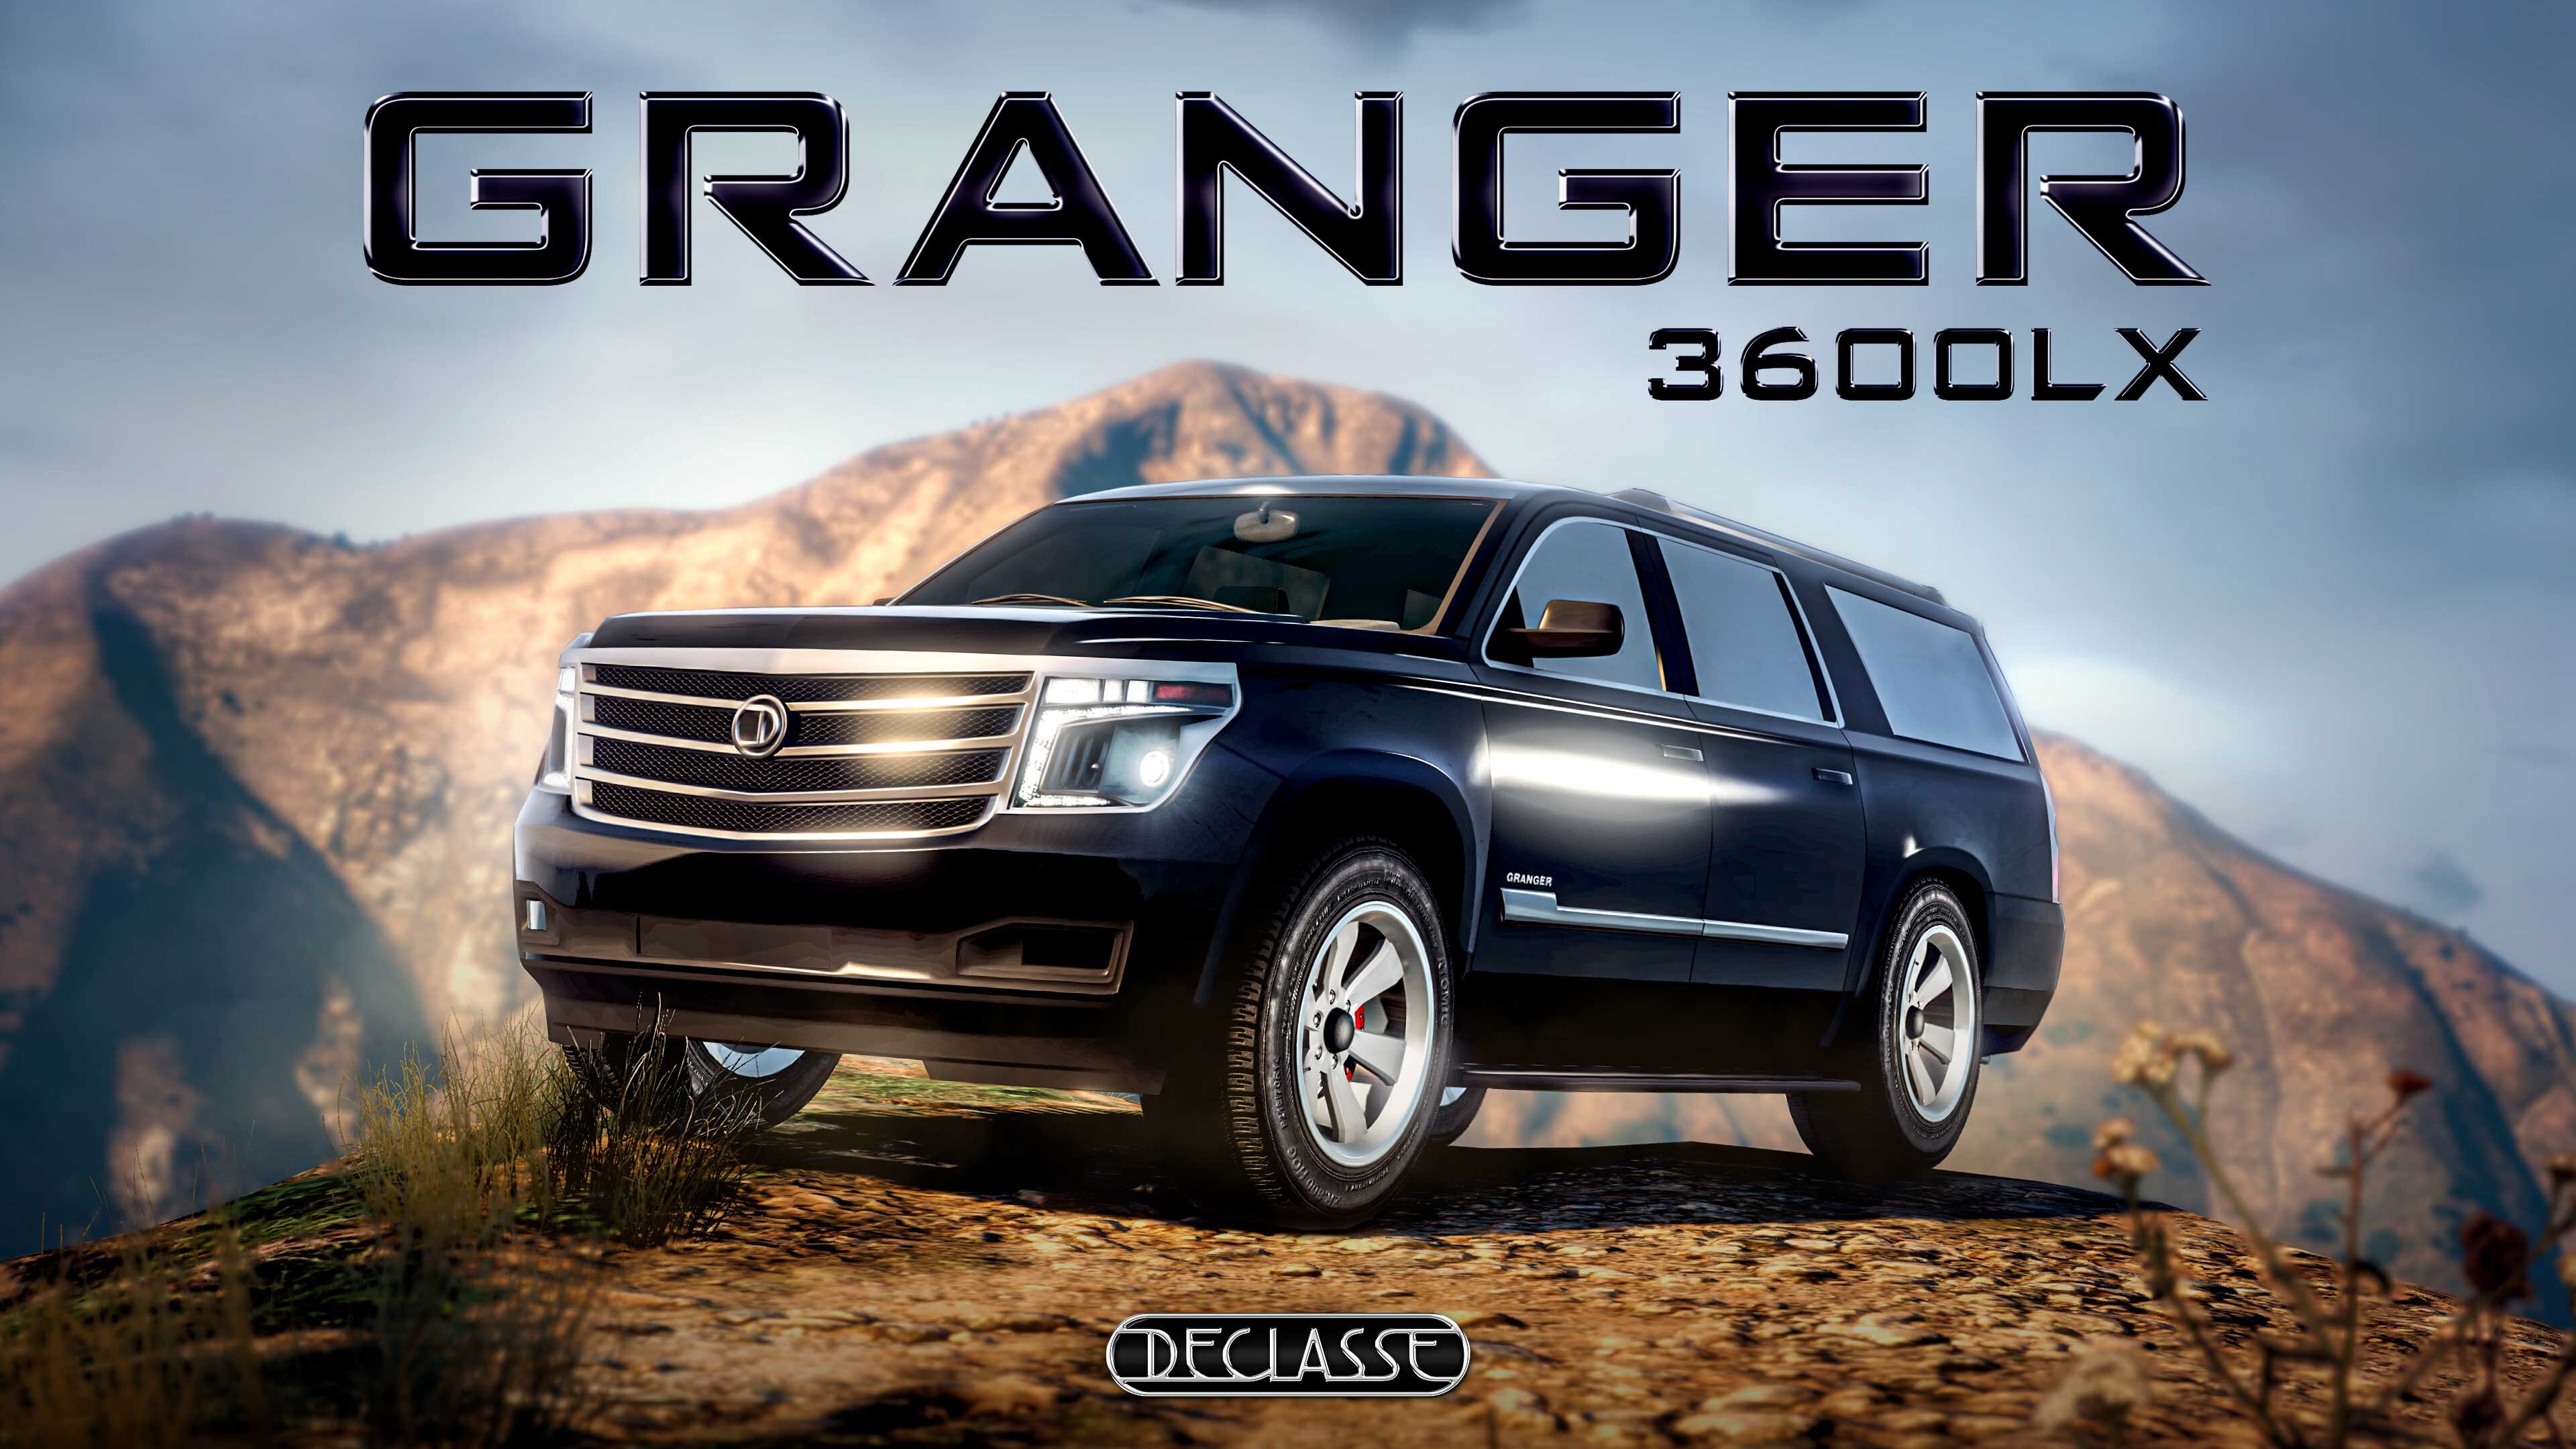 More information about "Alleen de echte schurken rijden in de nieuwe Granger 3600LX"